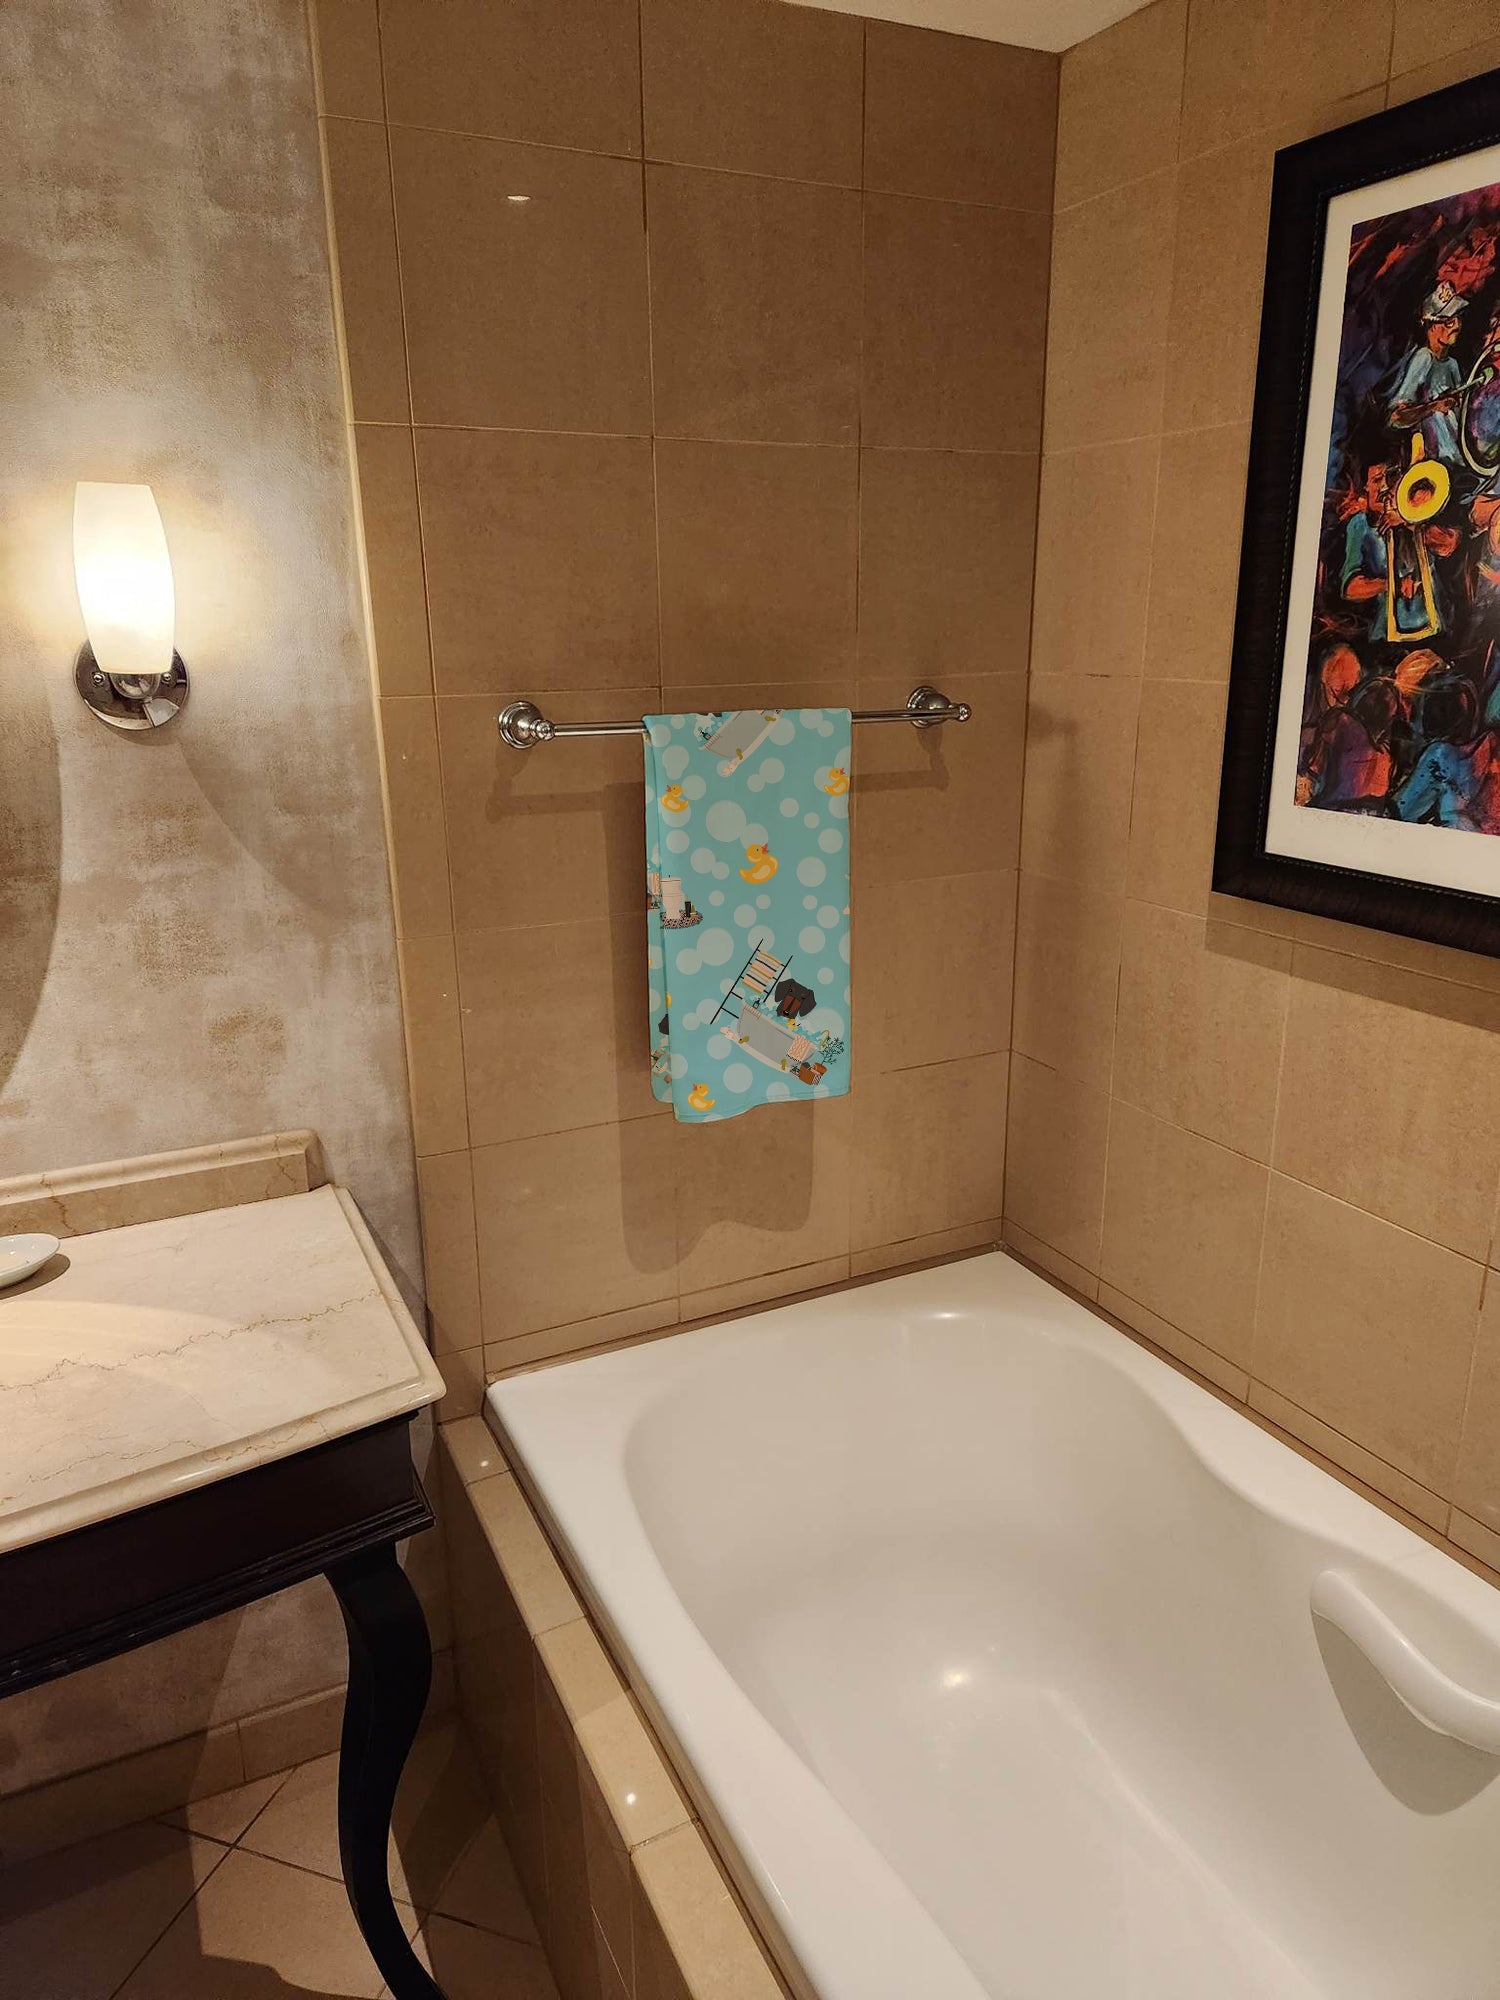 Buy this Black Tan Dachshund in Bathtub Bath Towel Large